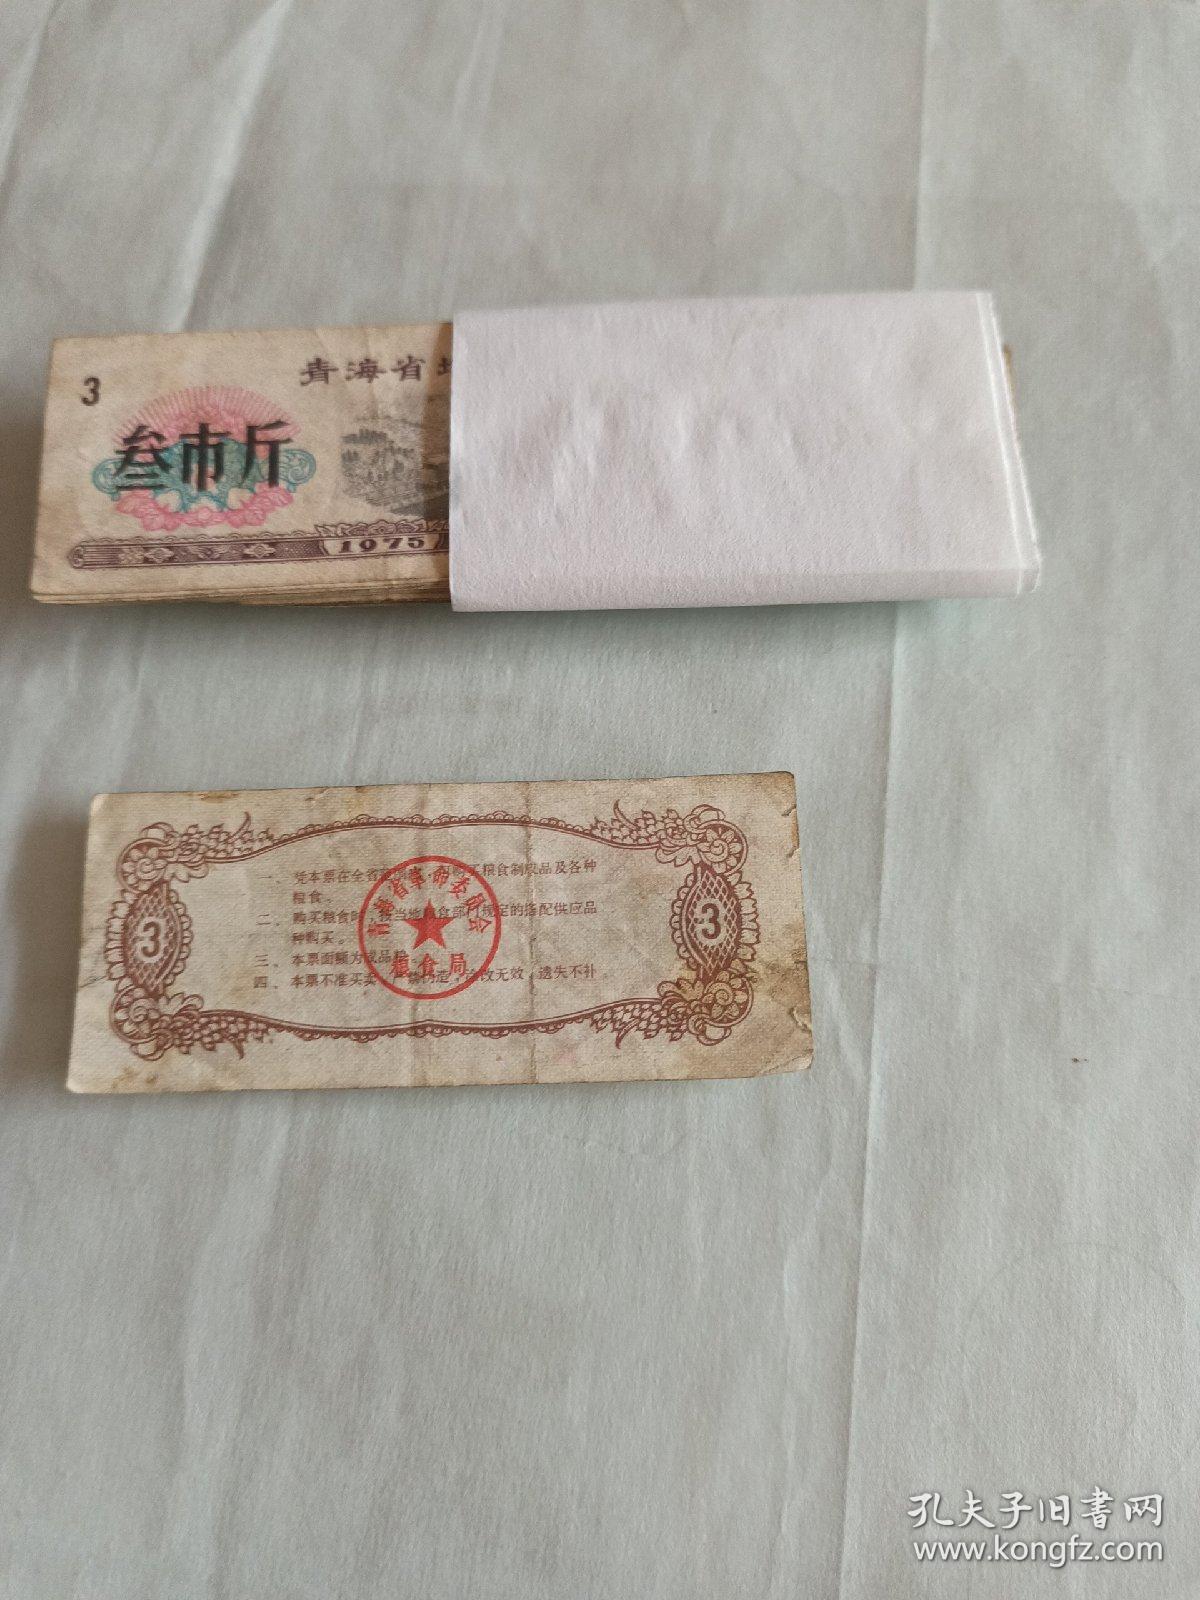 1975年青海地方粮票叁市斤
（26张）